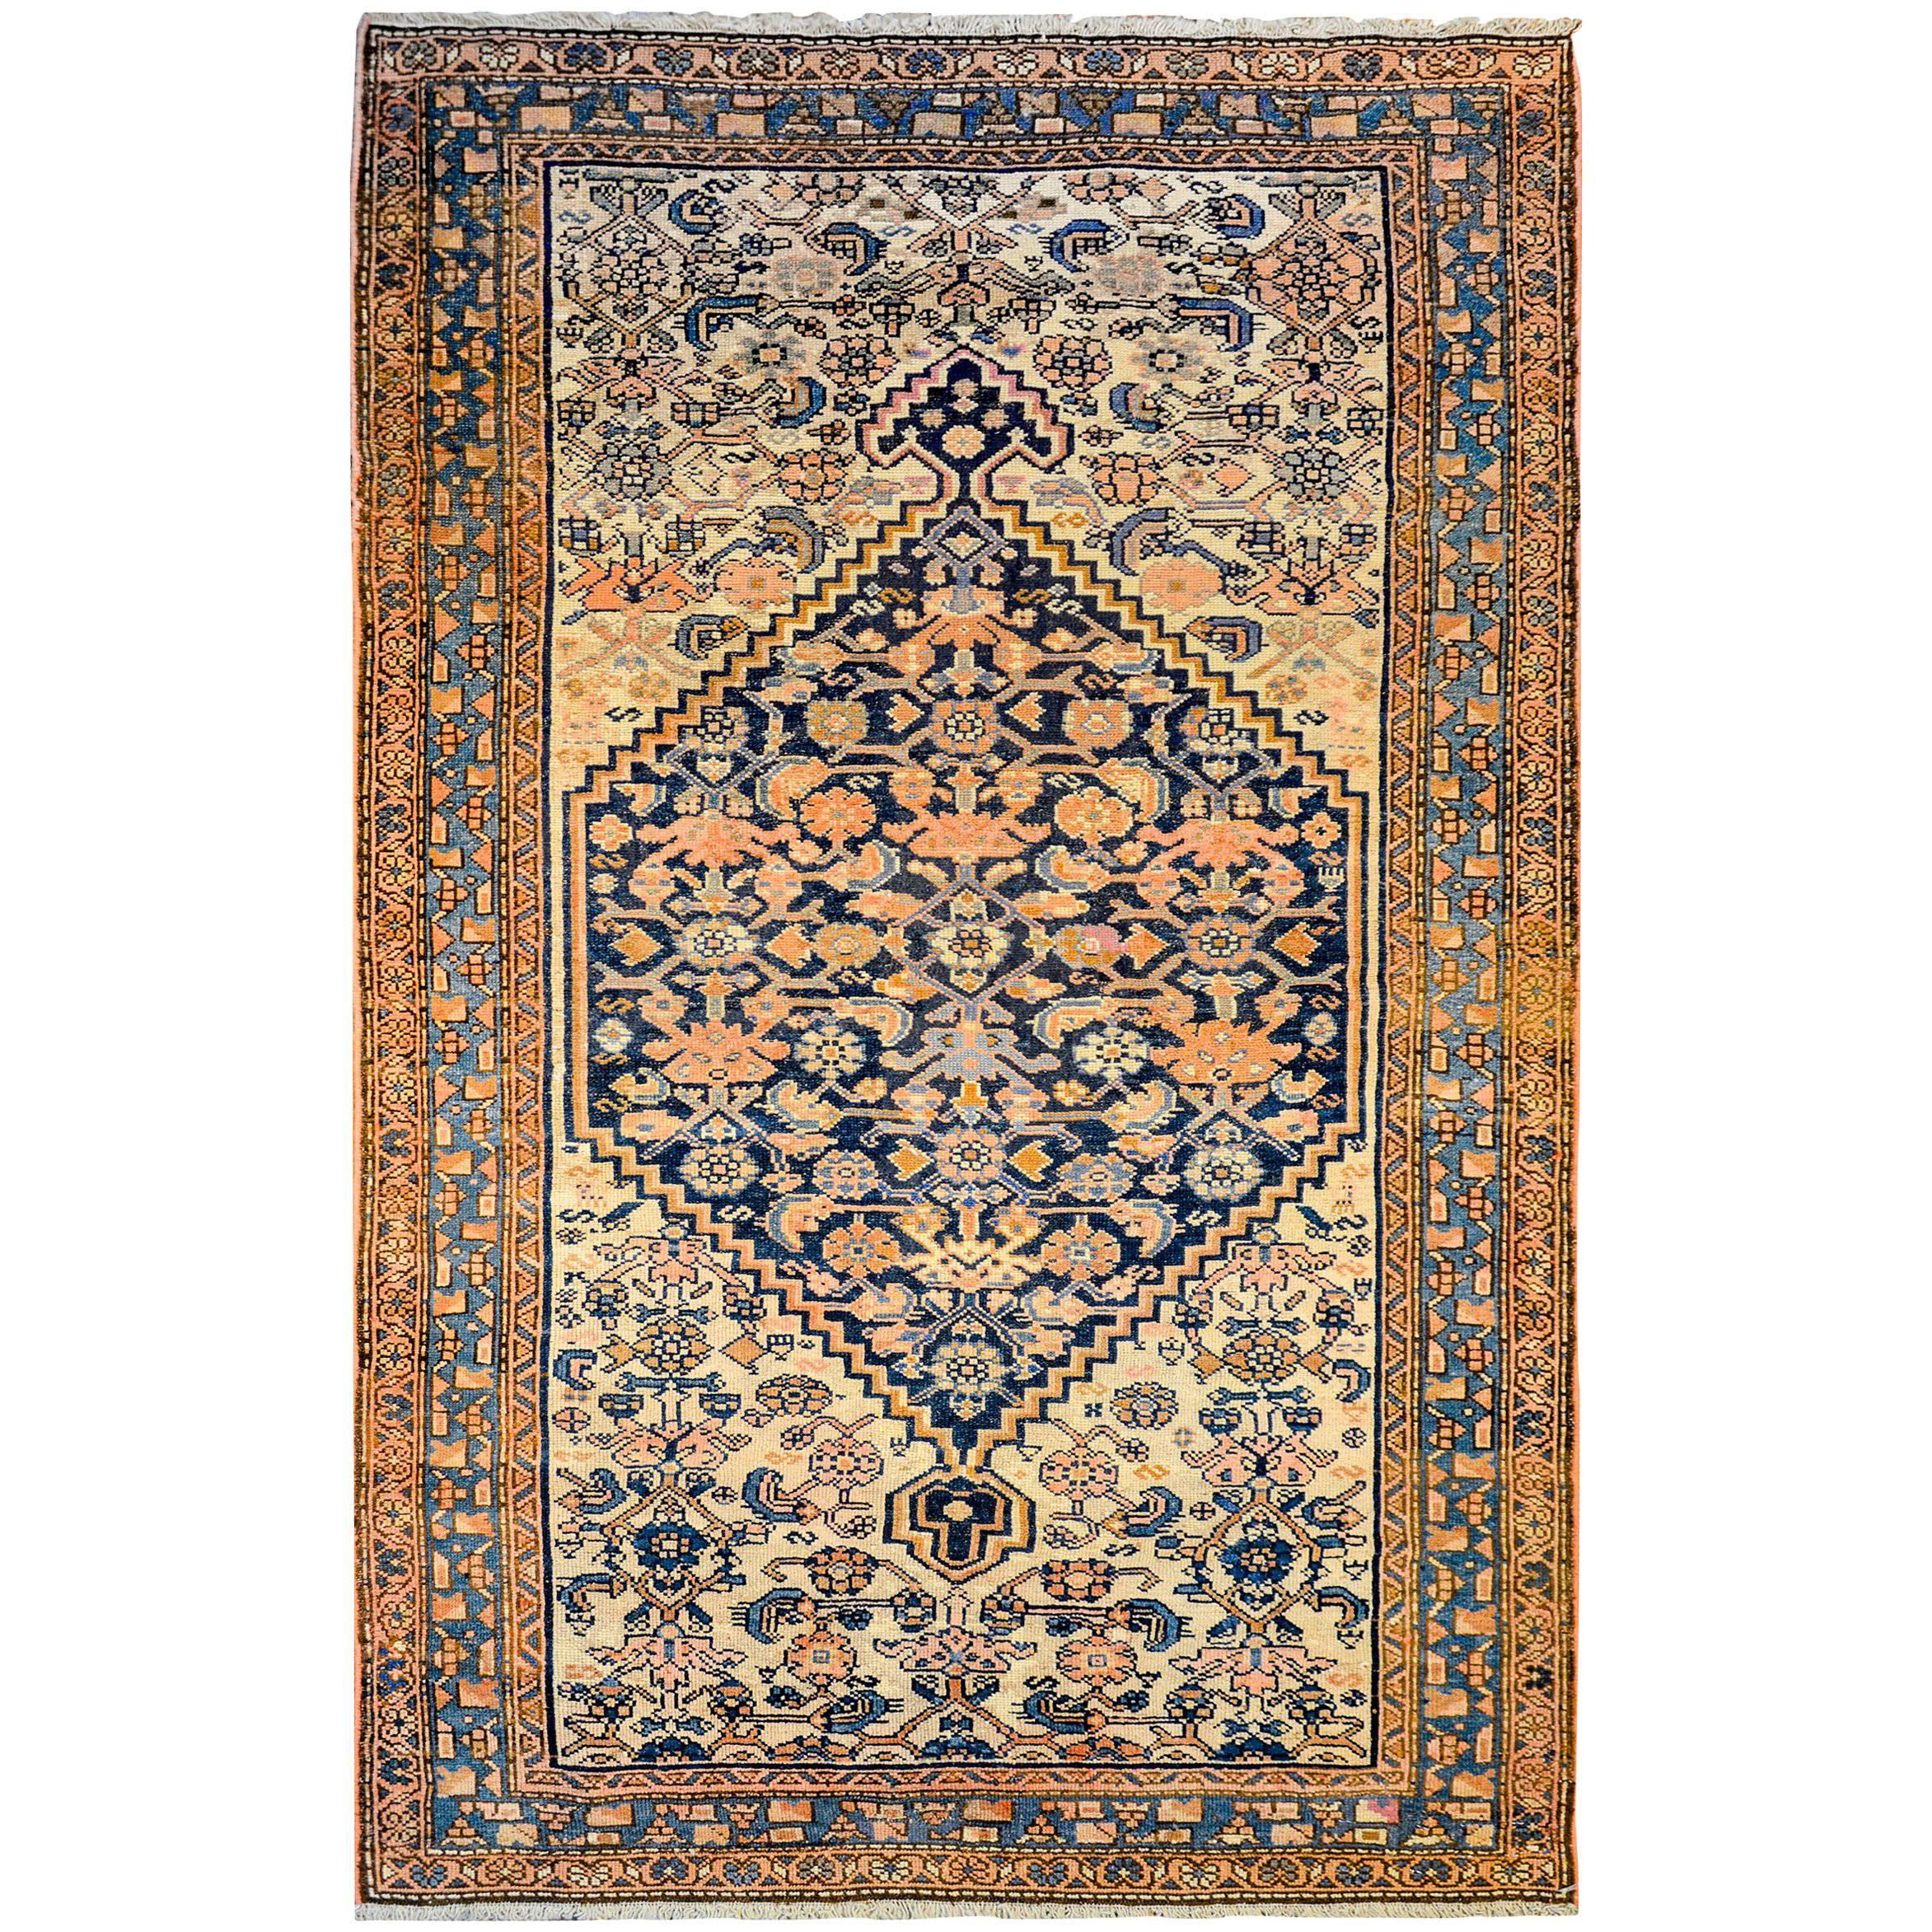 Merveilleux tapis Azari du début du XXe siècle